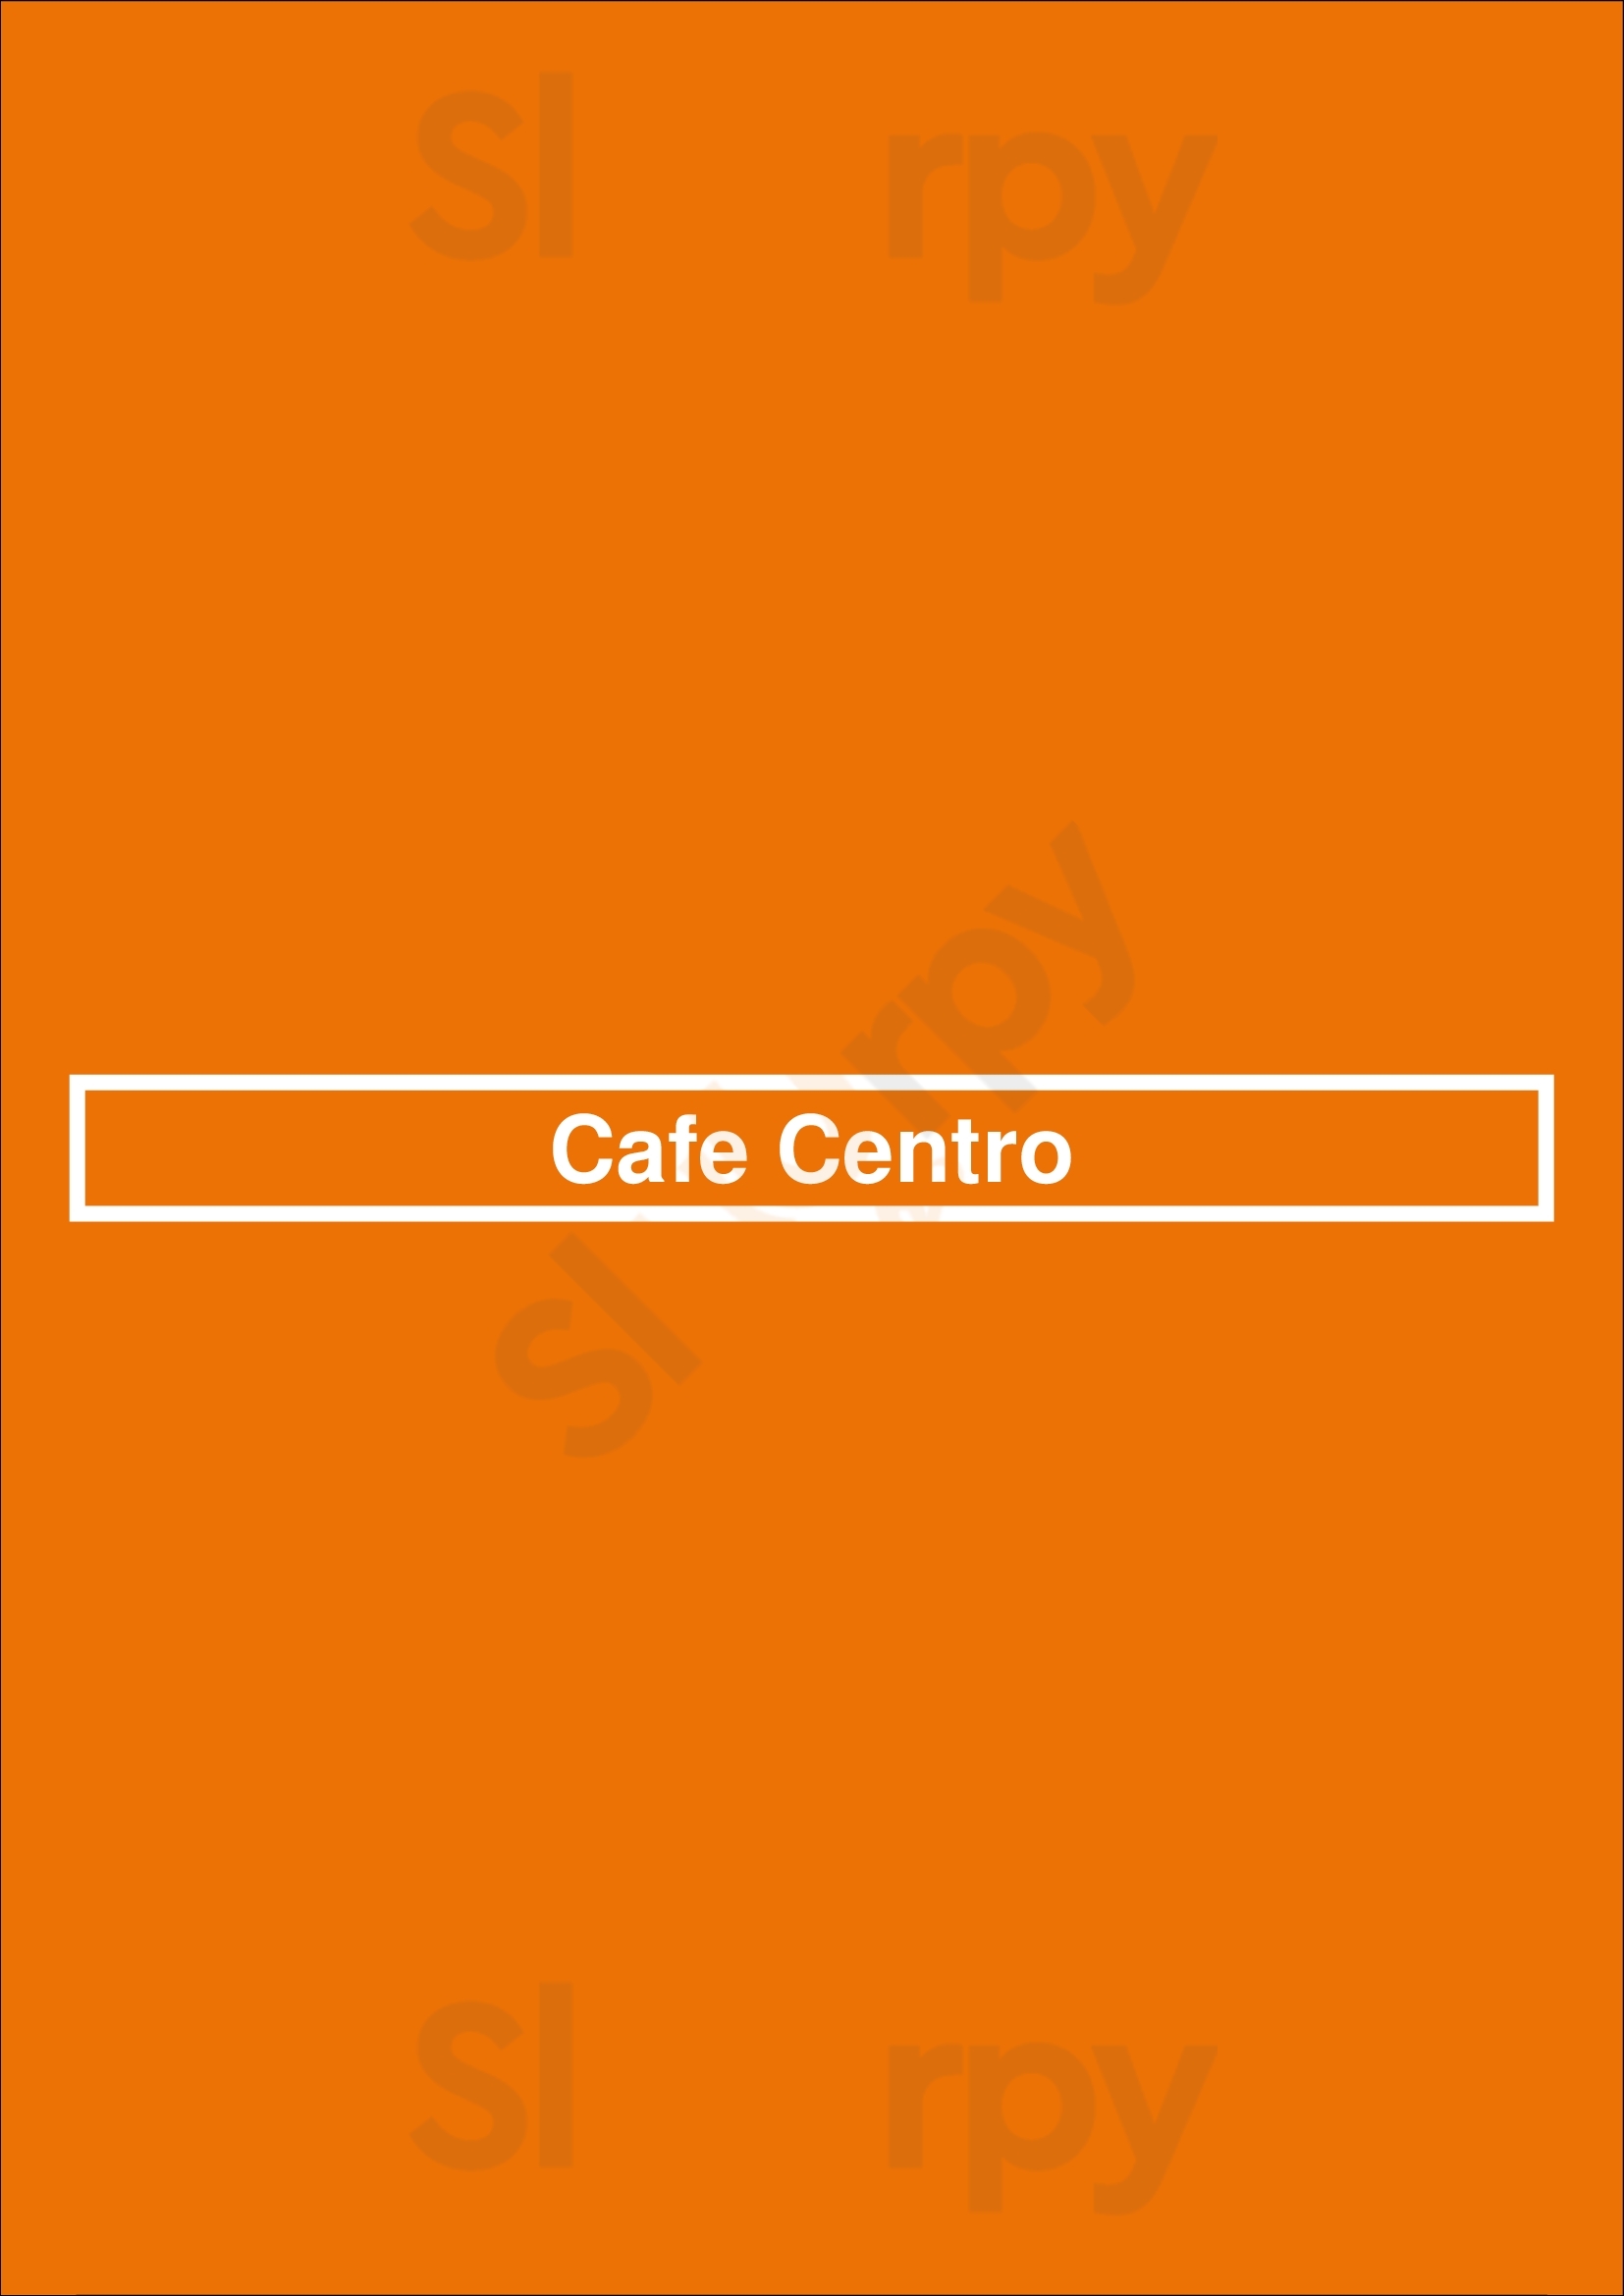 Cafe Centro New York City Menu - 1